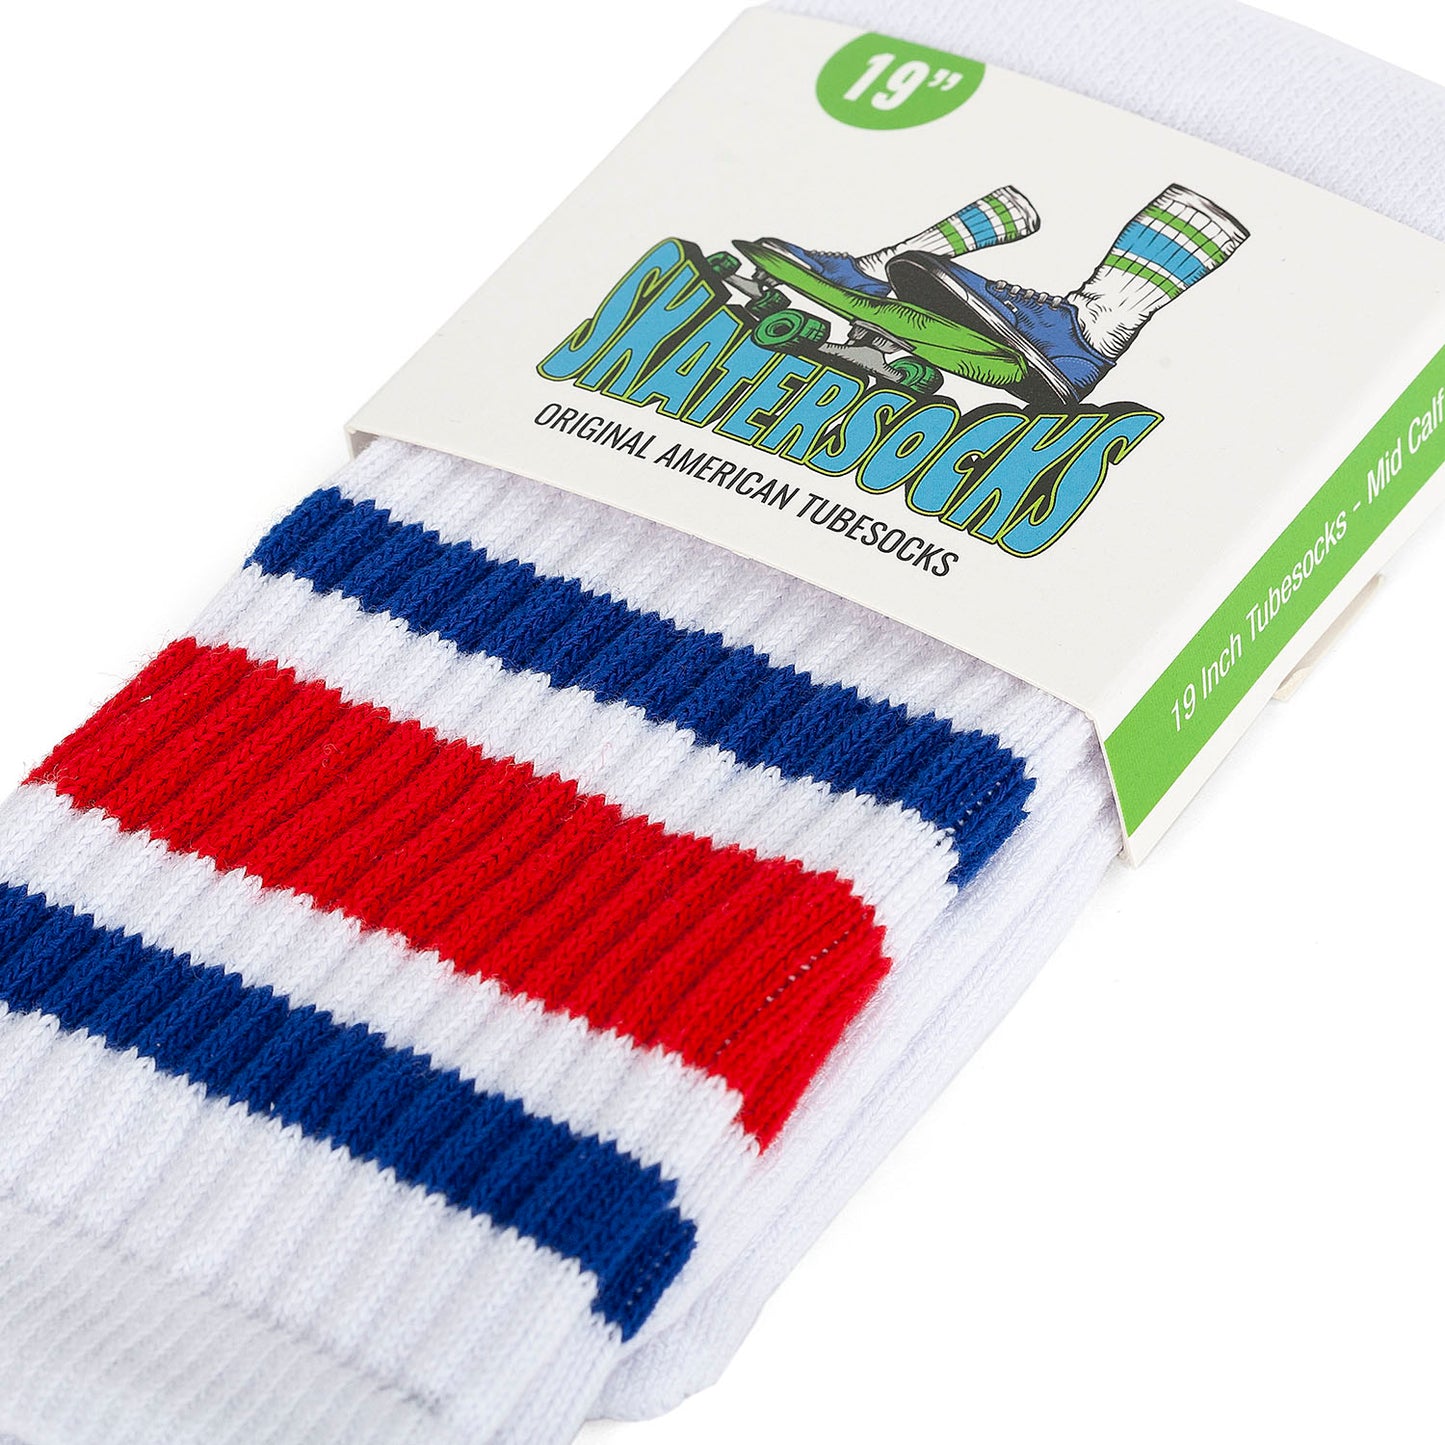 Skatersocks 19 Inch Mid Calf Tube Socks white - royal blue red striped